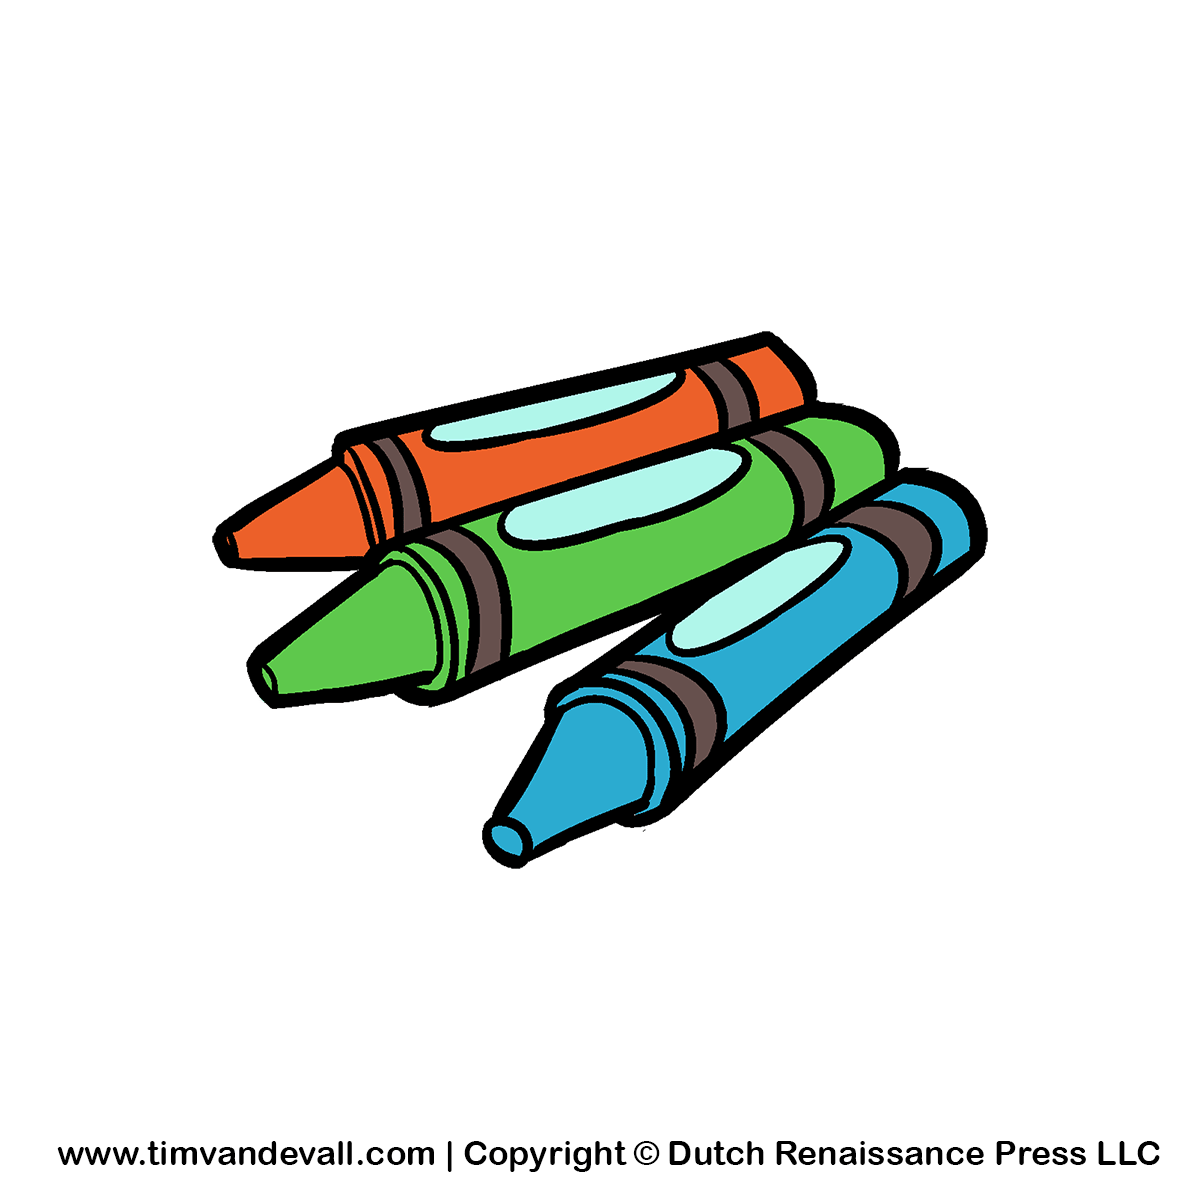 Cartoon Crayons - ClipArt Best